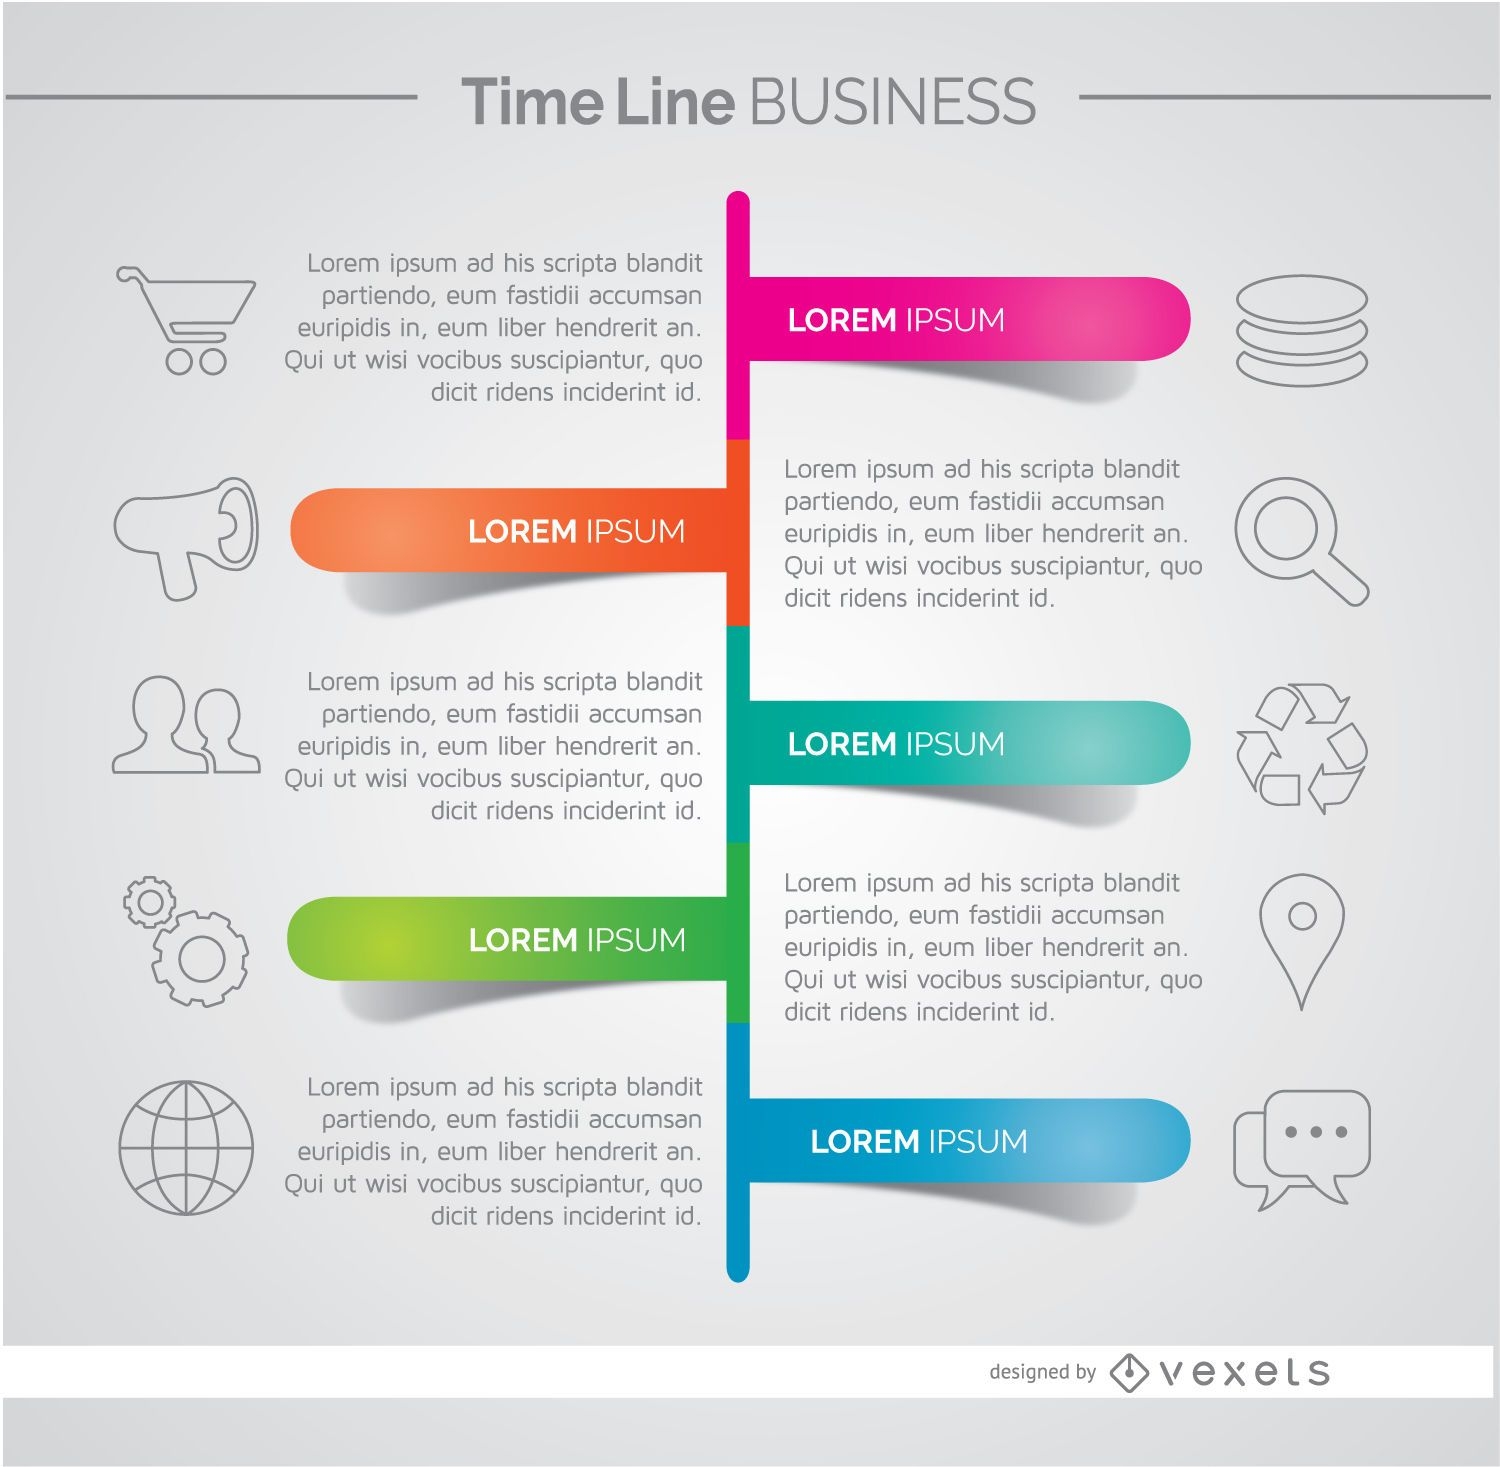 Infografik zur Geschäftsentwicklung in der Zeitleiste